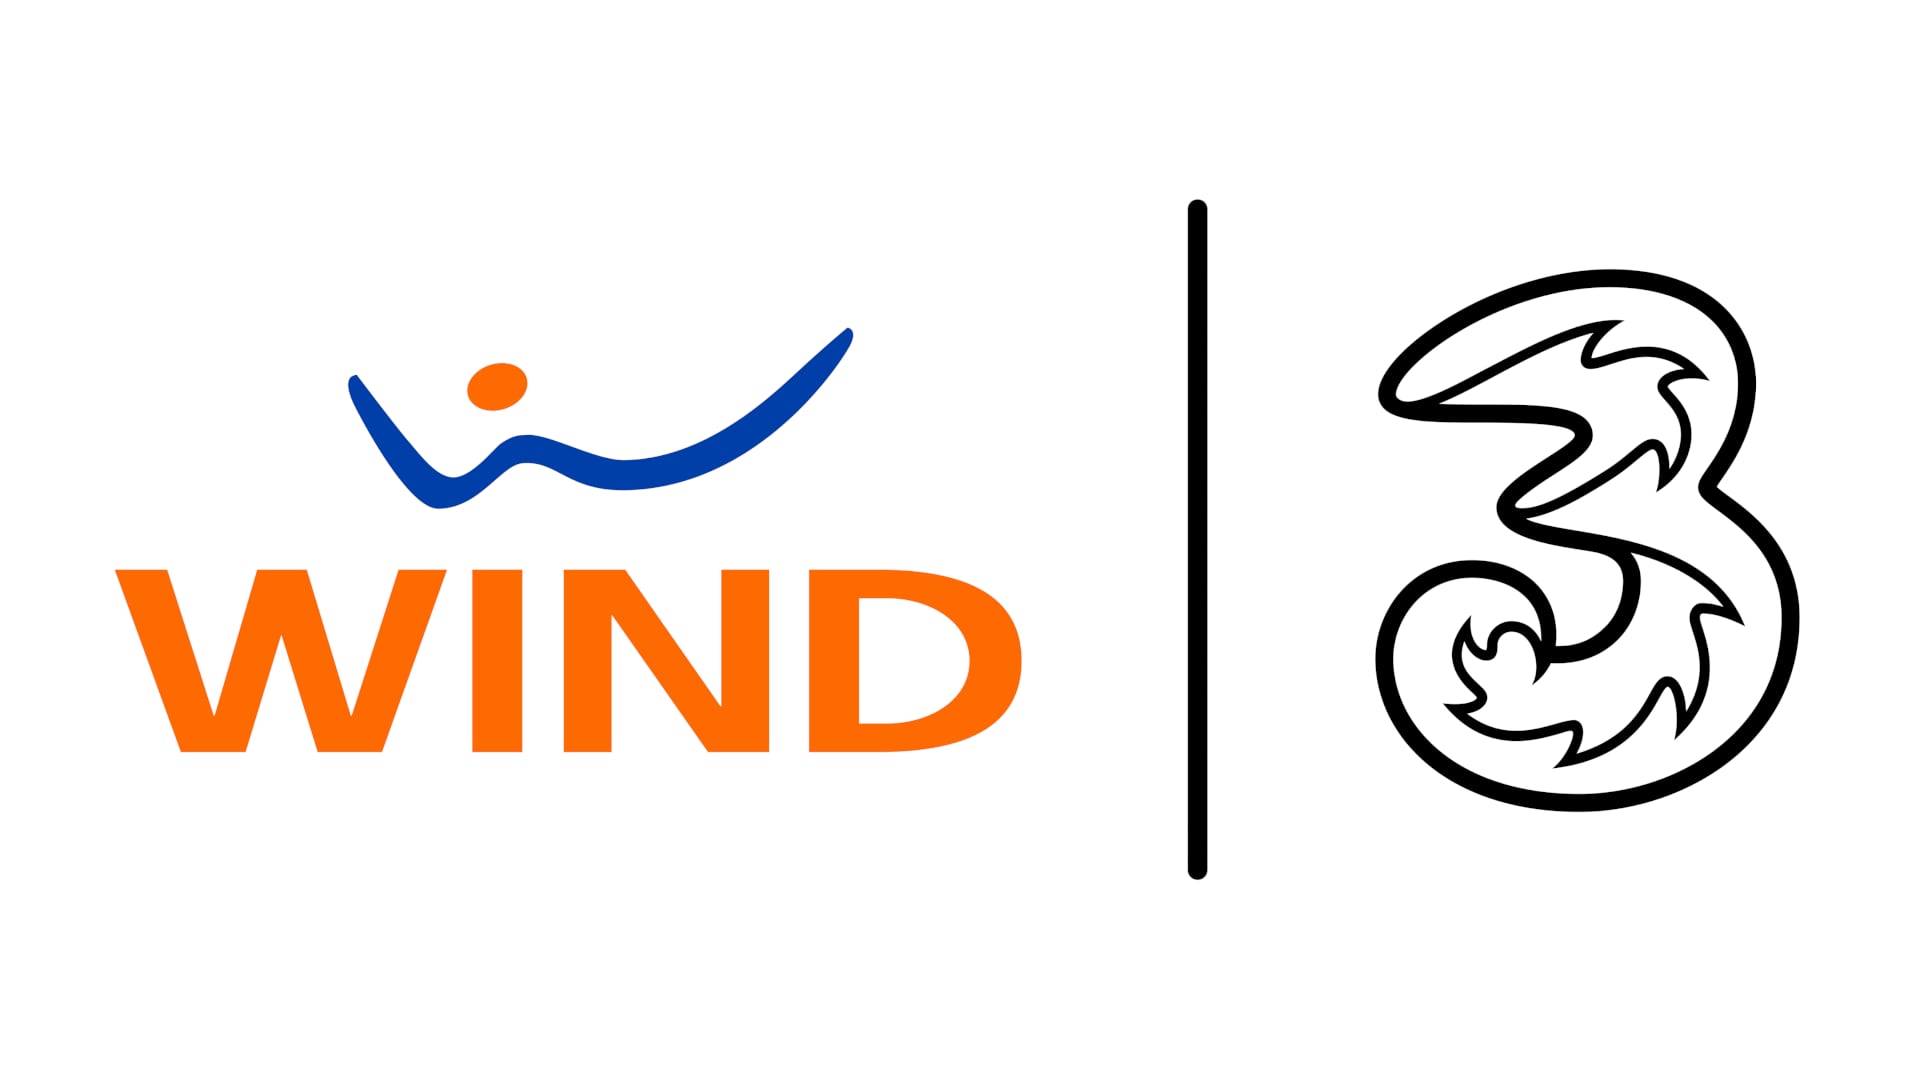 Wind Tre sta per scontare la sua fibra: a partire 22,99€ al mese nelle zone di copertura